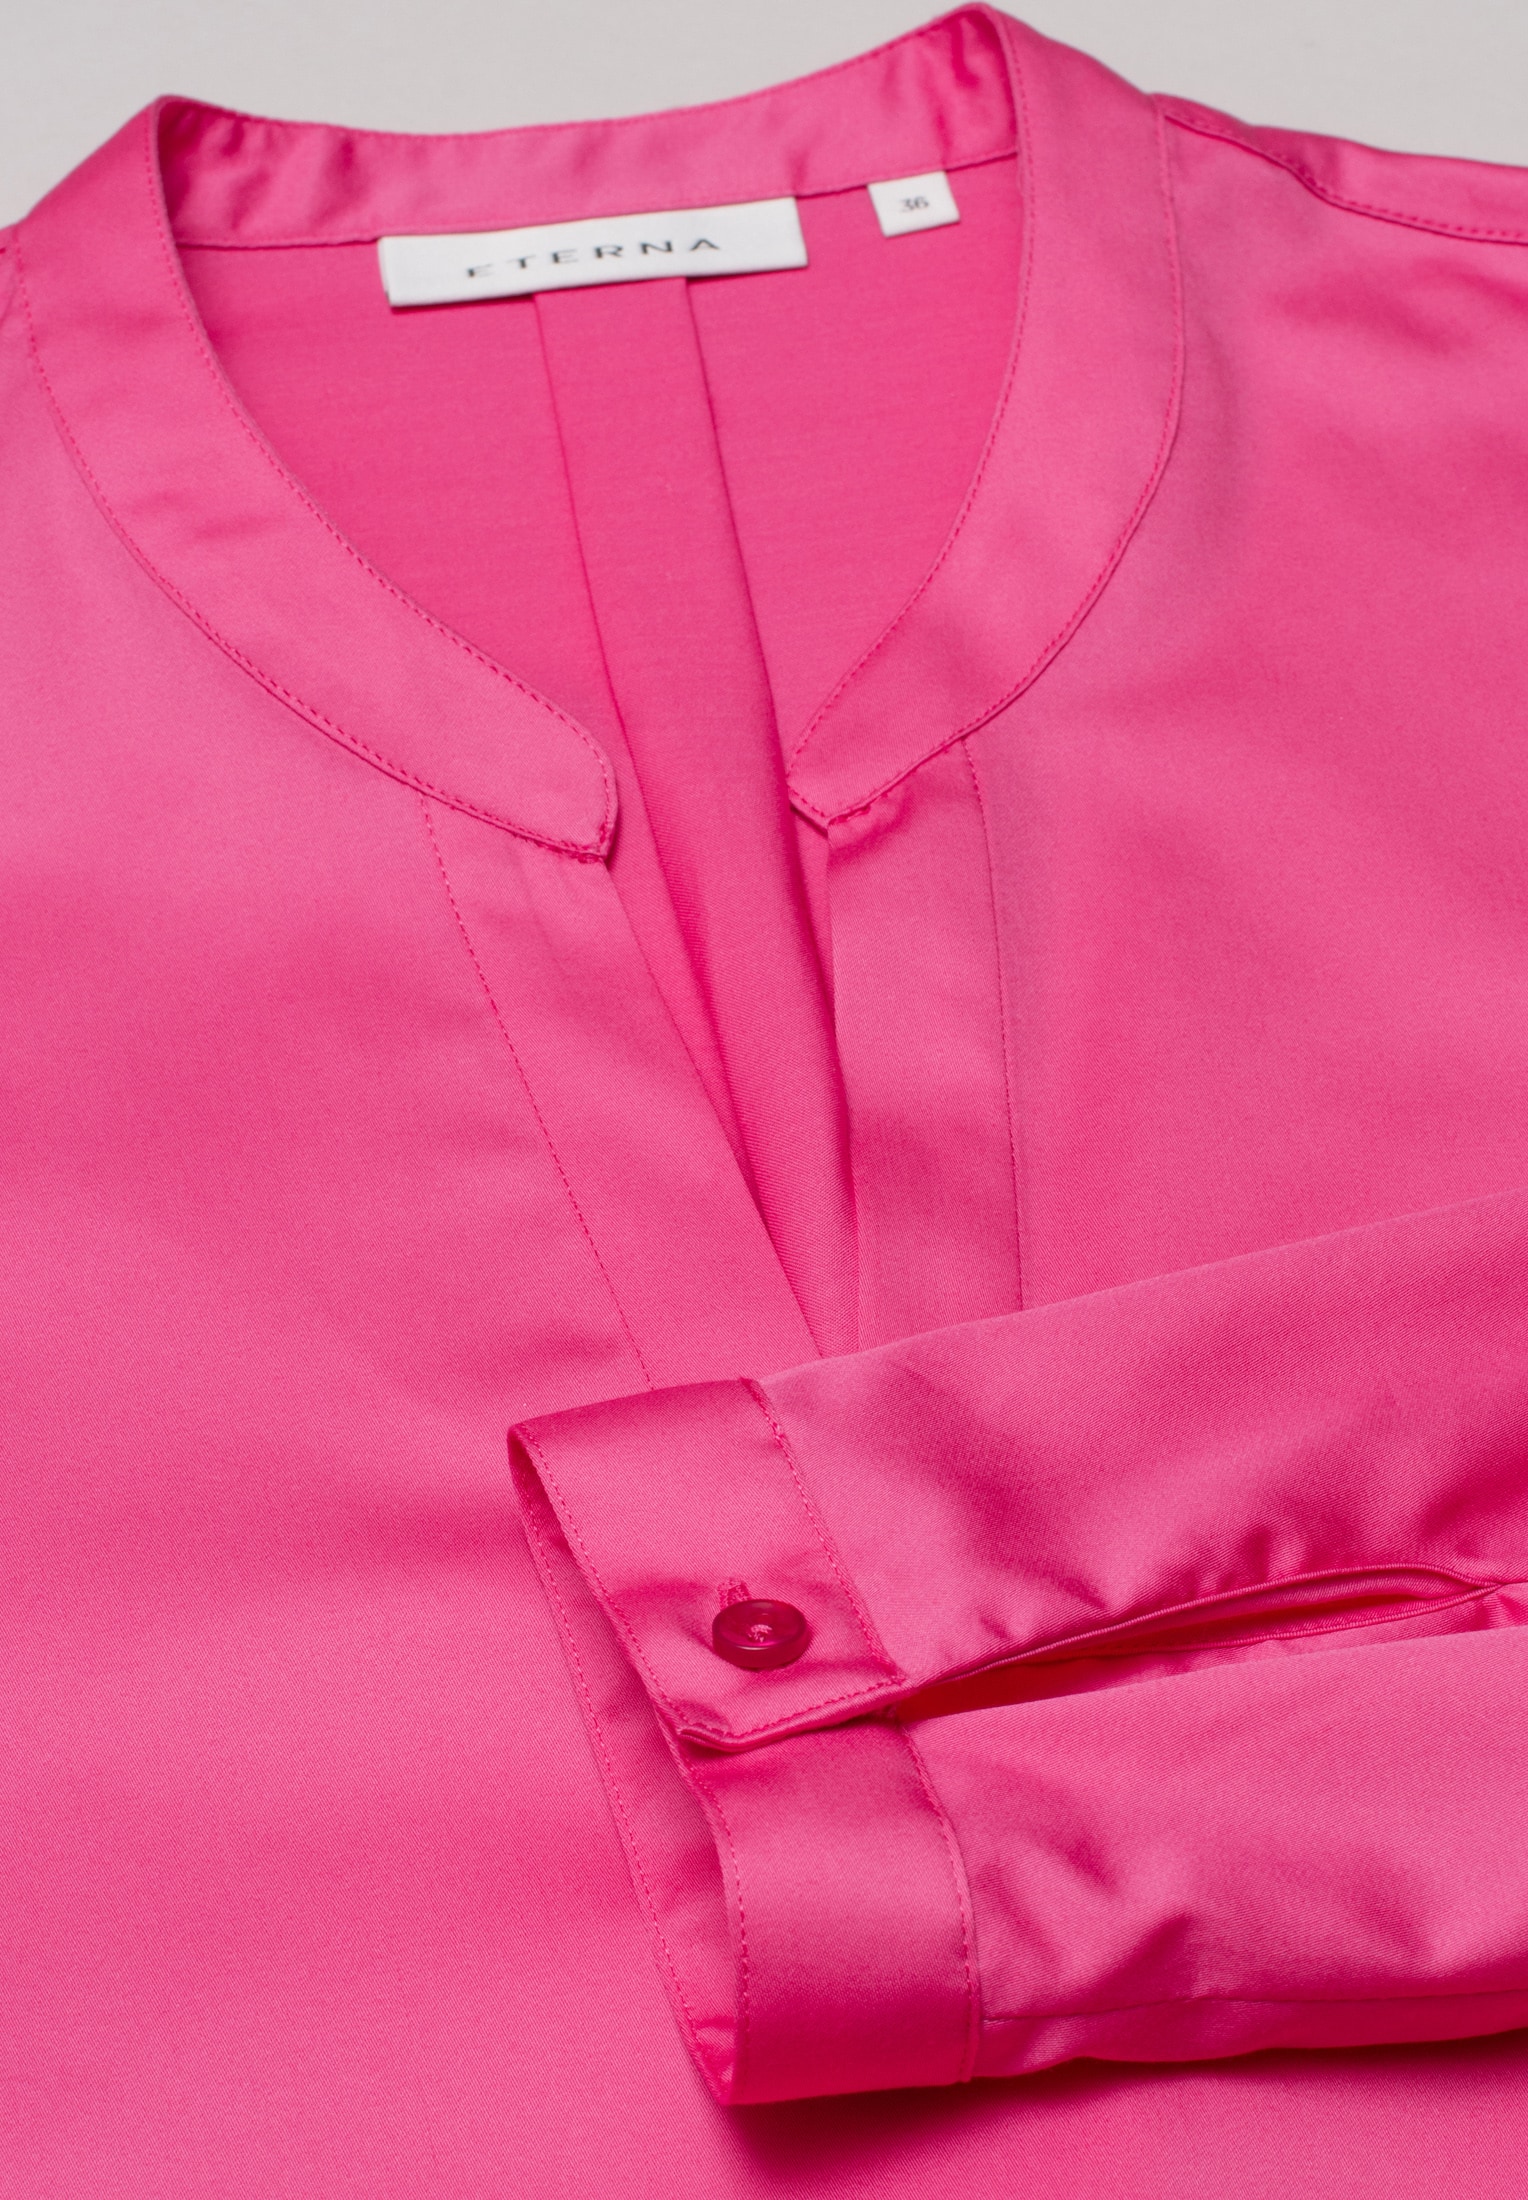 50 | Shirt pink 2BL00618-15-21-50-1/1 pink in | Langarm unifarben Bluse Satin | |